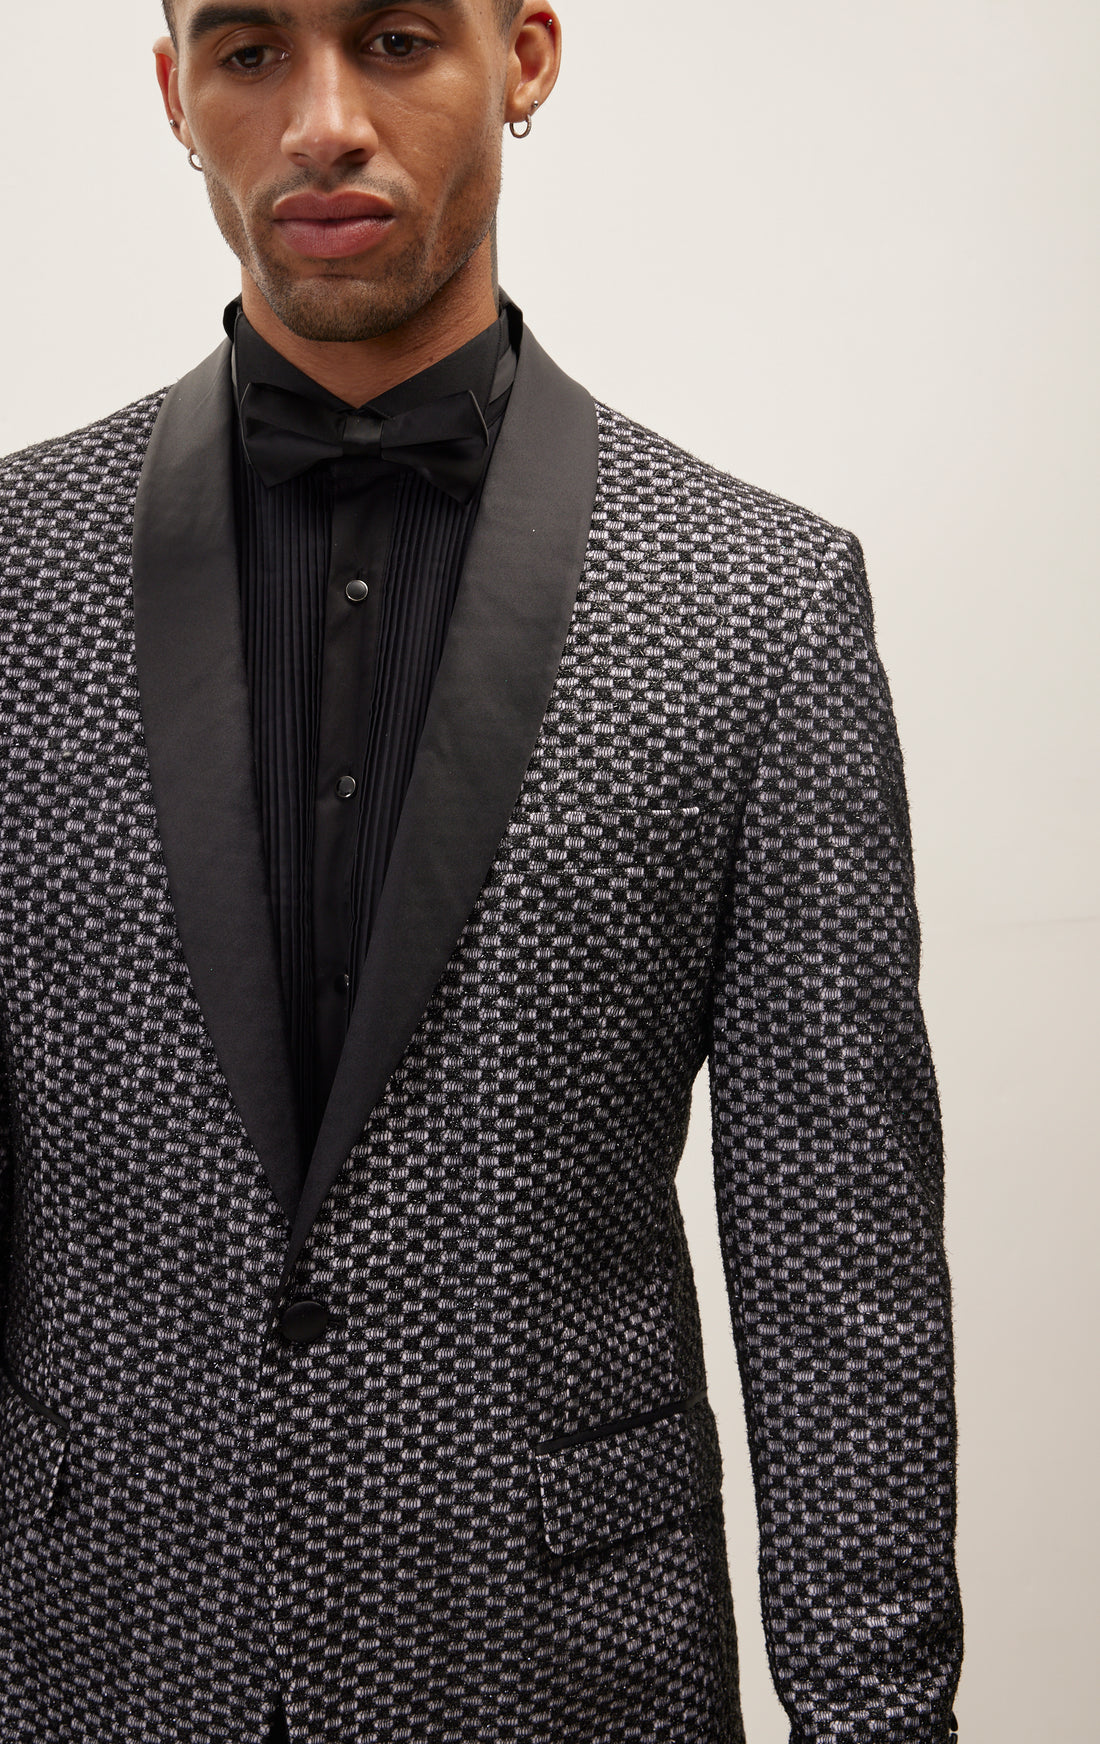 Checkered Lace Weave Shawl Lapel Tuxedo Jacket - Black White